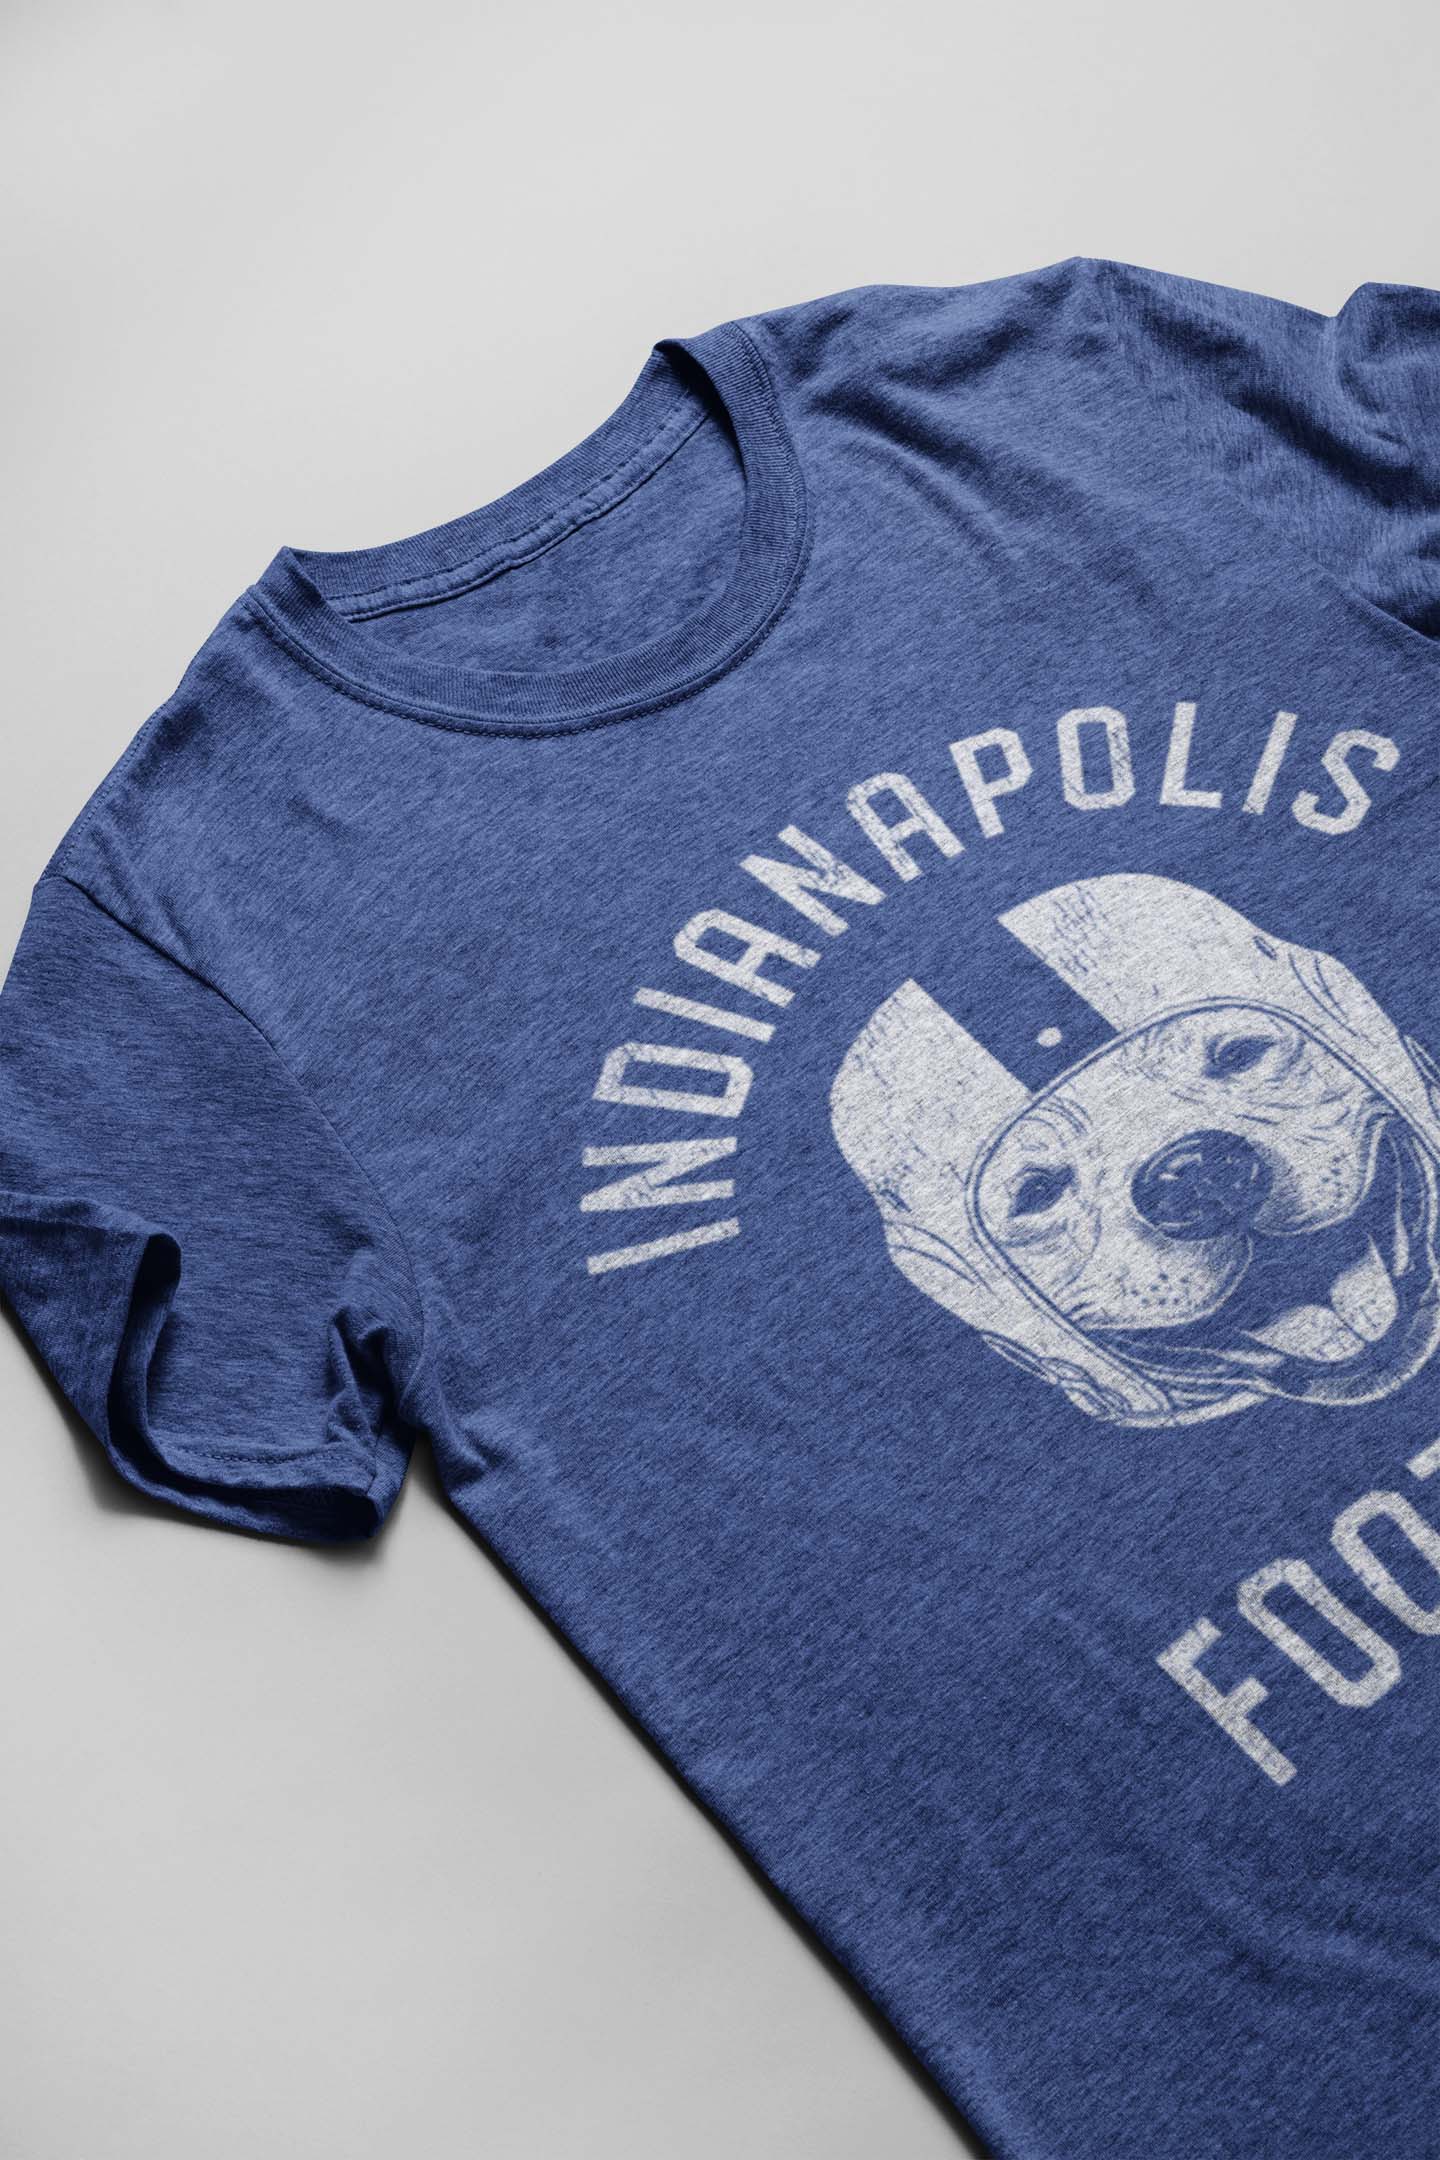 Indianapolis Football Pitbull T-Shirt